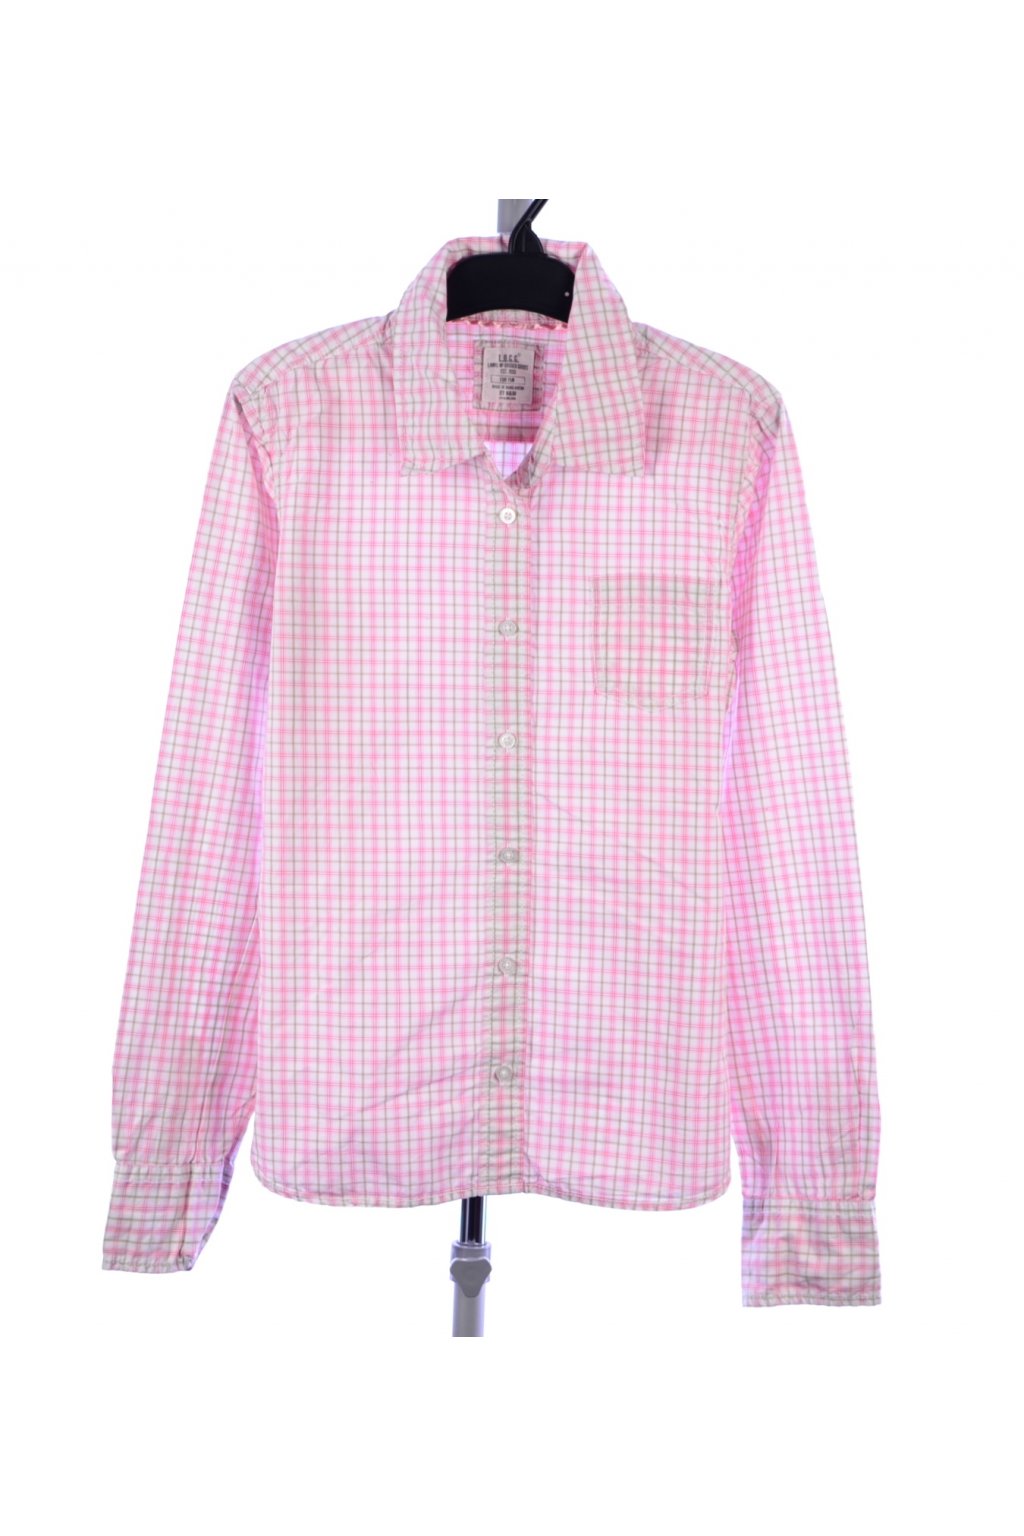 Košile karo růžová H&M vel. 158